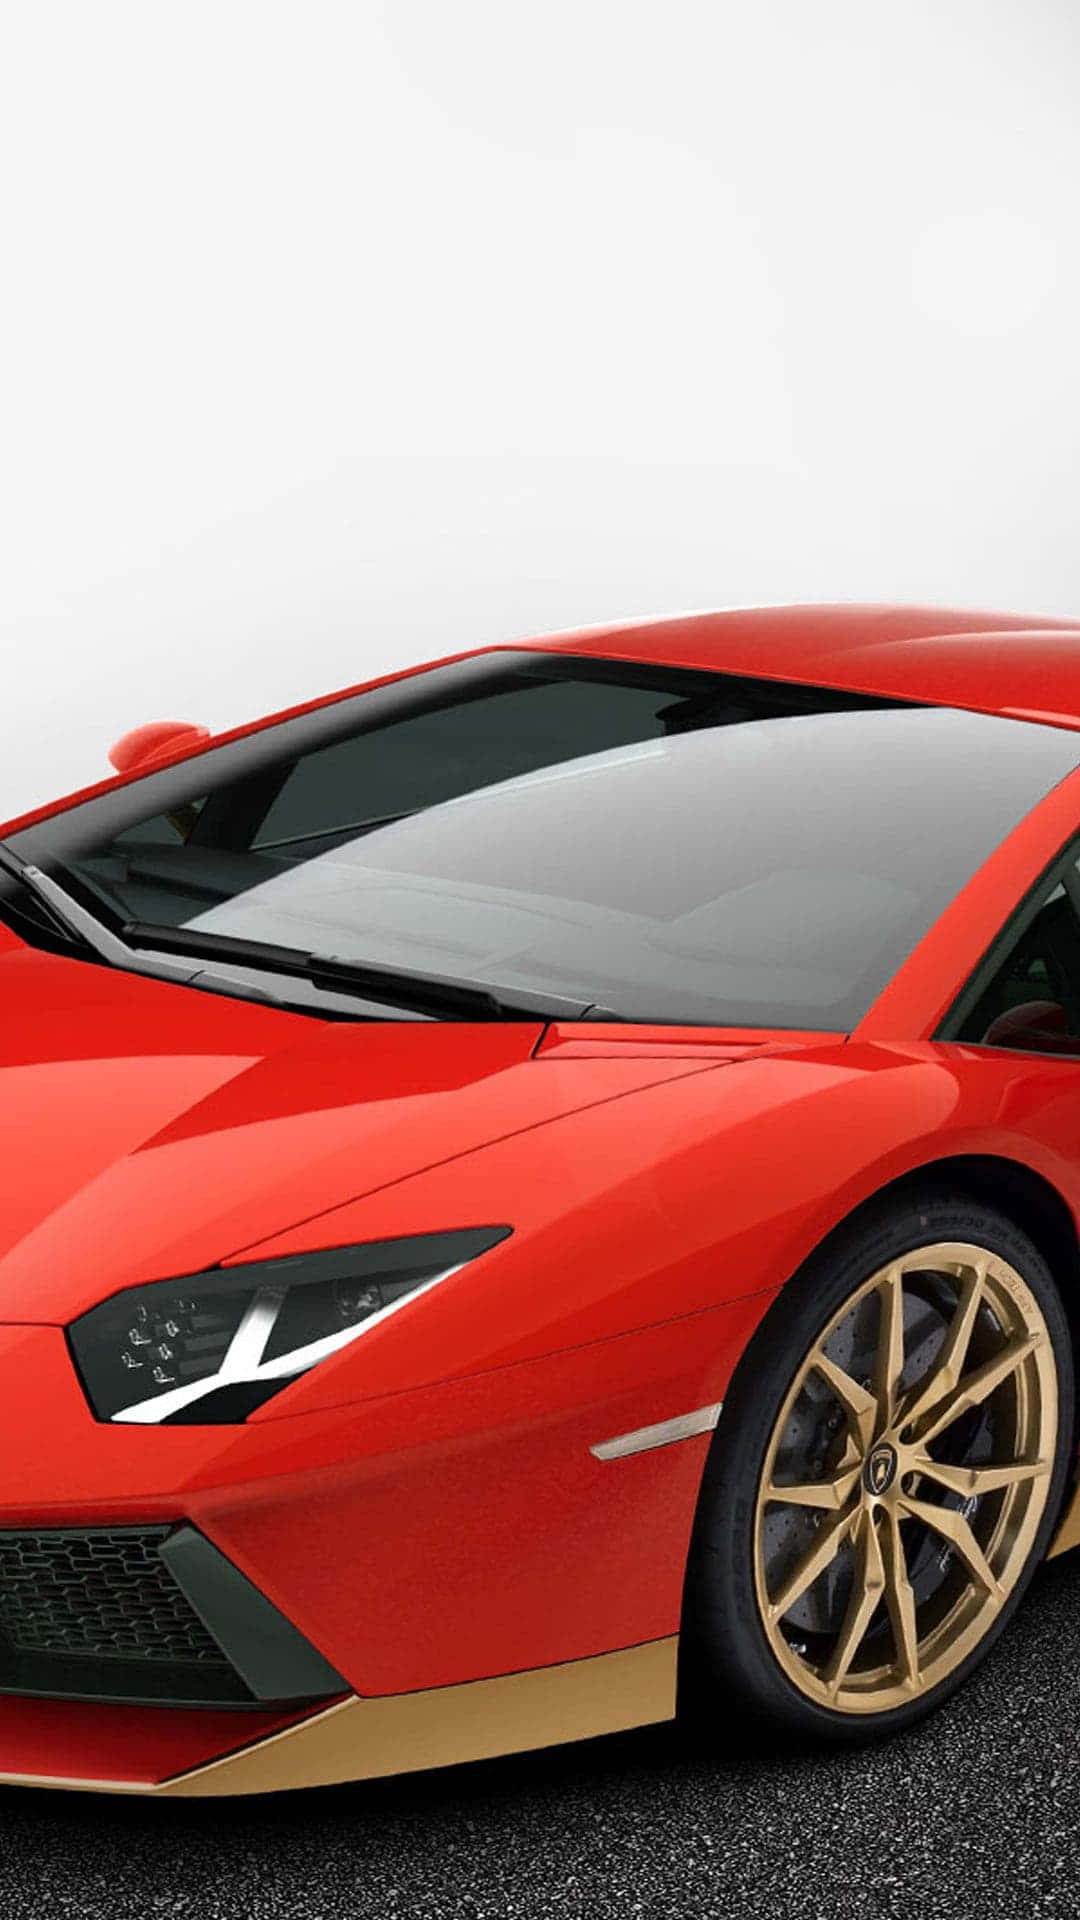 Preparatia Correre Con Il Nuovo Edizione Limitata Pixel 3xl Lamborghini!